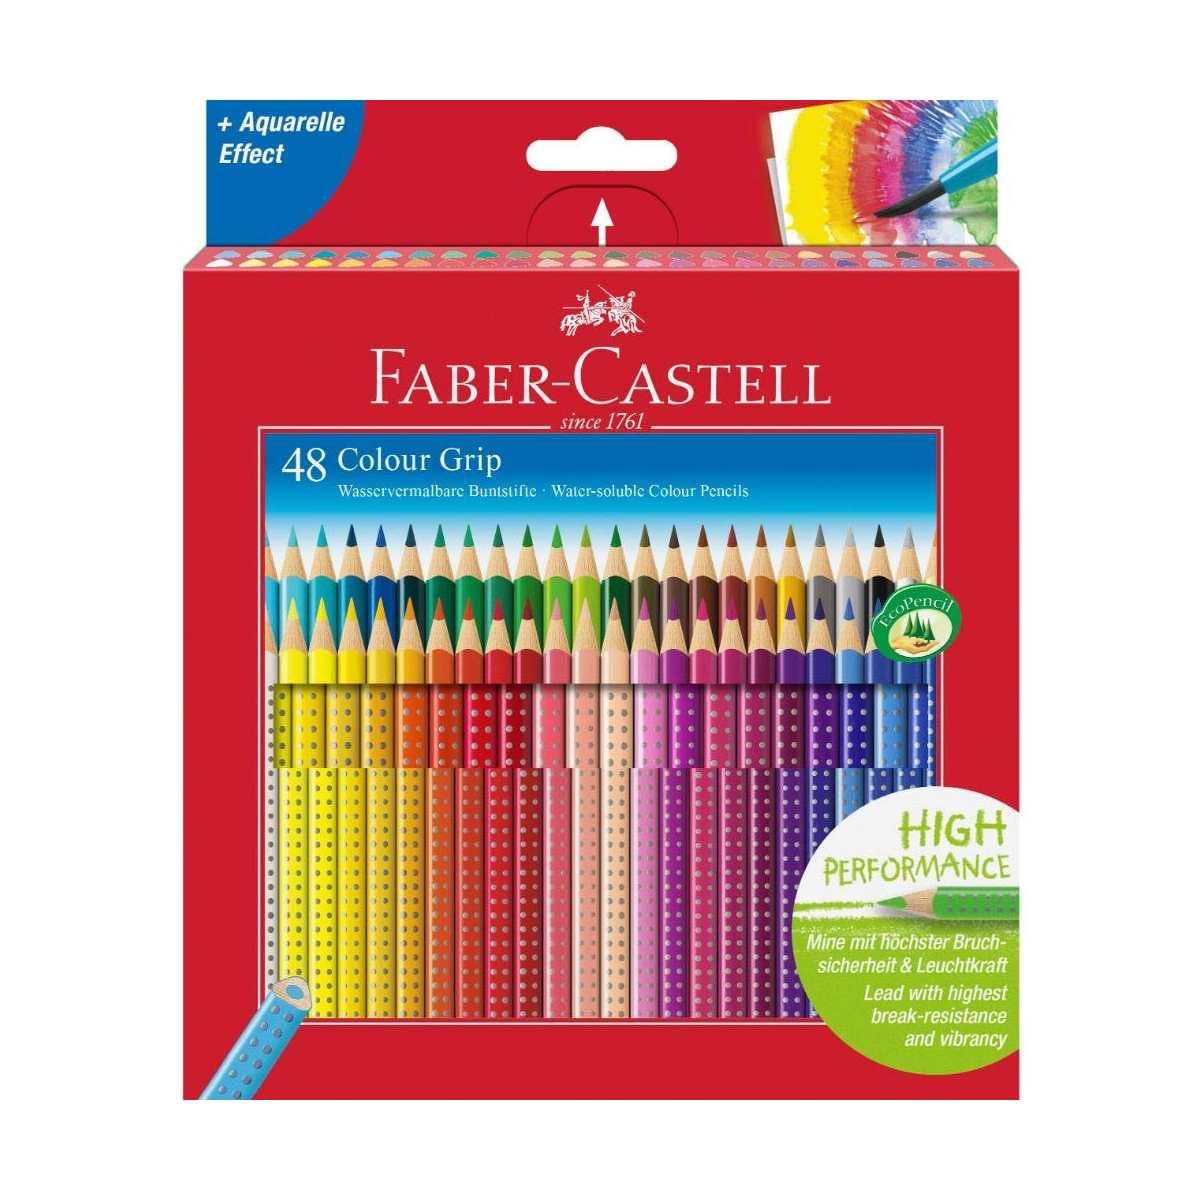 Faber-castell Faber castell astuccio cartone da 48 matite acquarellabili  colour grip 40425 4005401124498